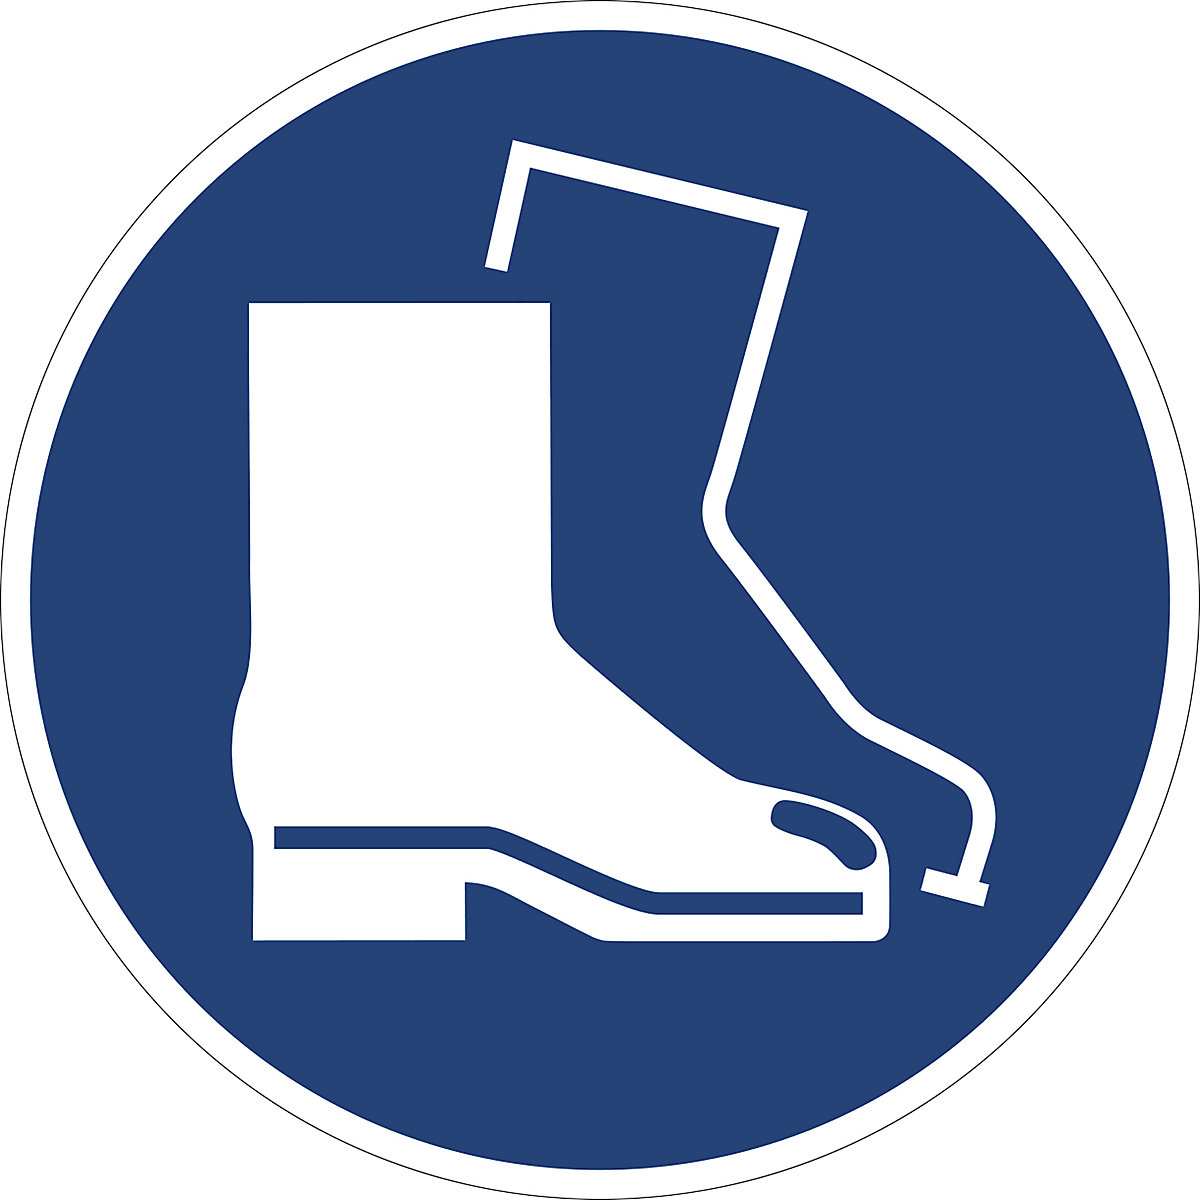 Panneaux indiquant les mesures de sécurité obligatoires, protection des pieds obligatoire, lot de 10, plastique, Ø 200 mm-2